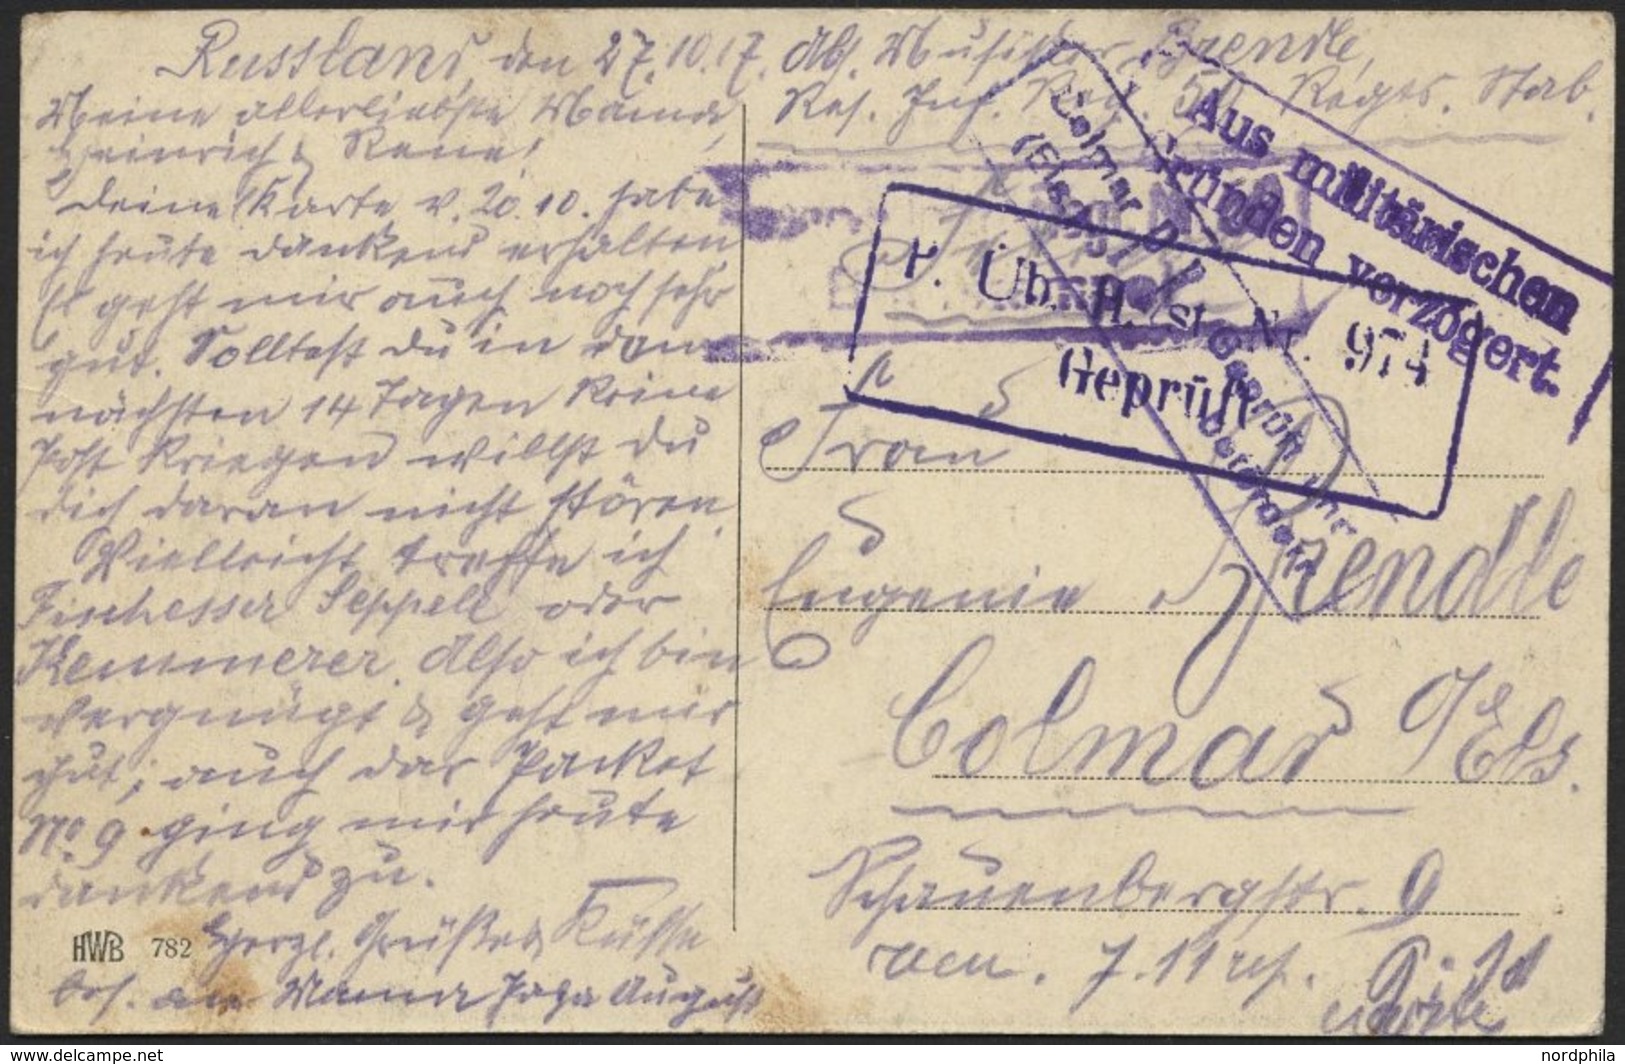 DT. FP IM BALTIKUM 1914/18 1. Reserve-Division, 27.10.17 (ohne Feldpoststempel), Auf Ansichtskarte (Riga-Schwarzhäuterha - Lettonie